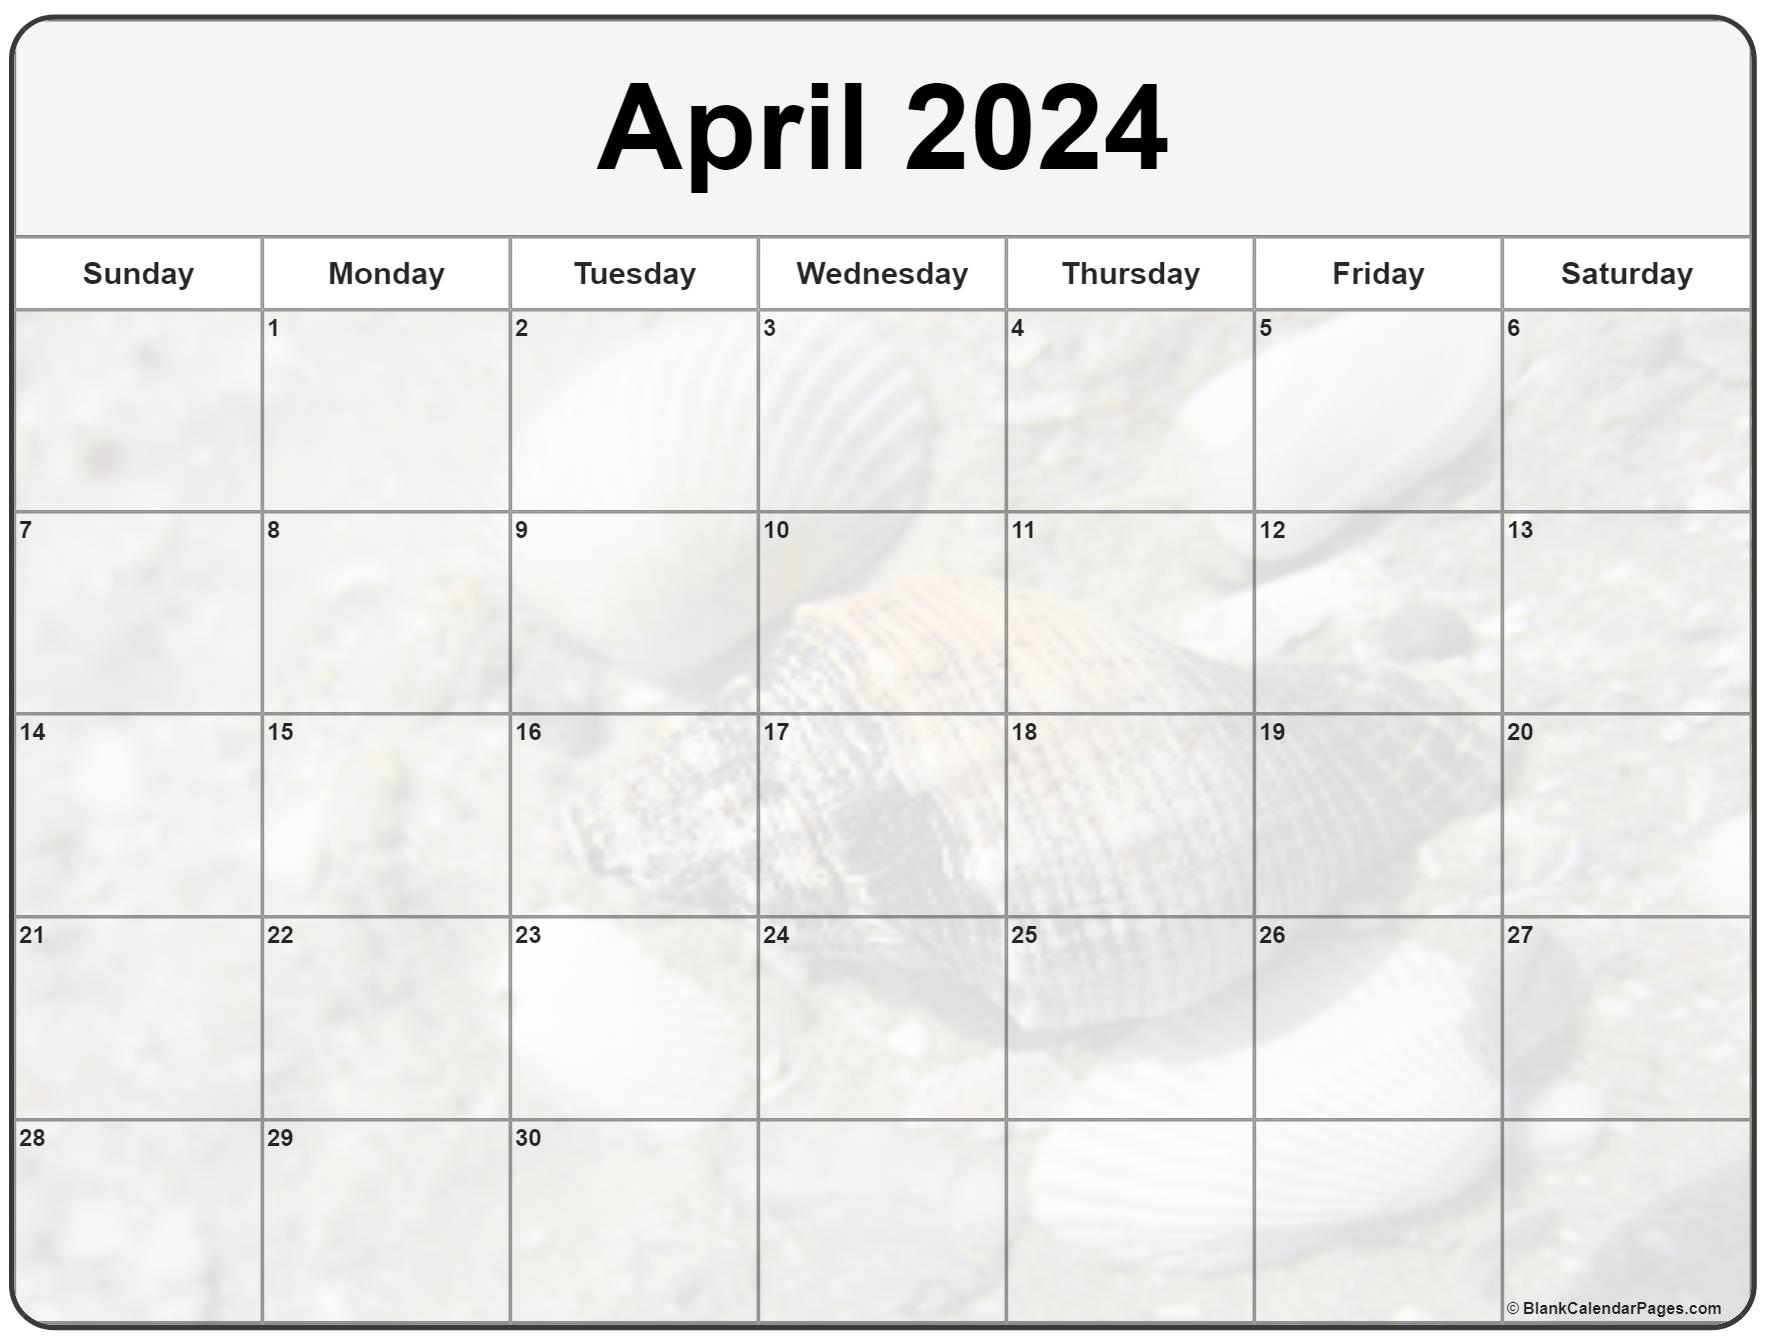 Октябрь месяц 2017 года. Календарь октябрь 2022. Календарь октябрь ноябрь 2022. Календарь январь 2022. Календарь июль 2022.